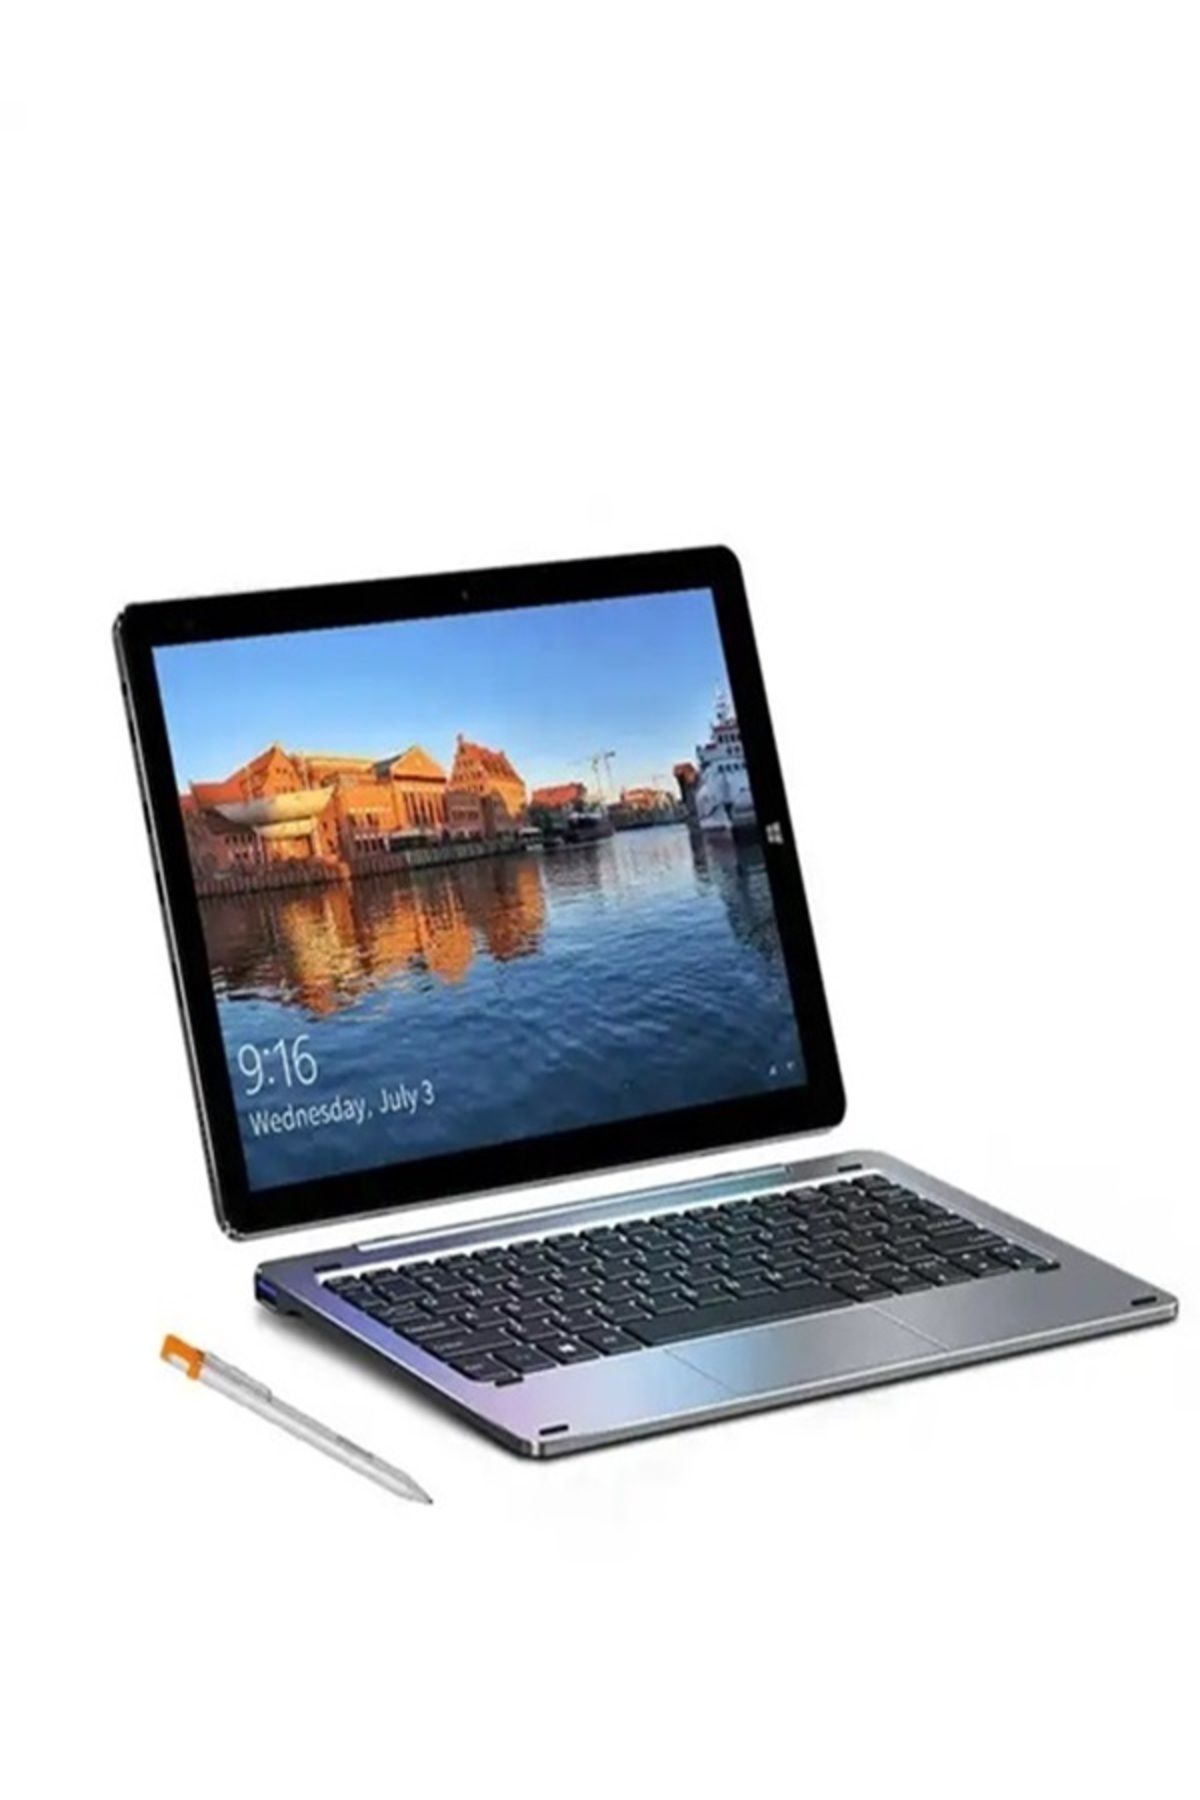 FOSILTECH Windows11 Tablet PC 10.1 inç, 6GB + 128GB Manyetik Klavye Hediyedir